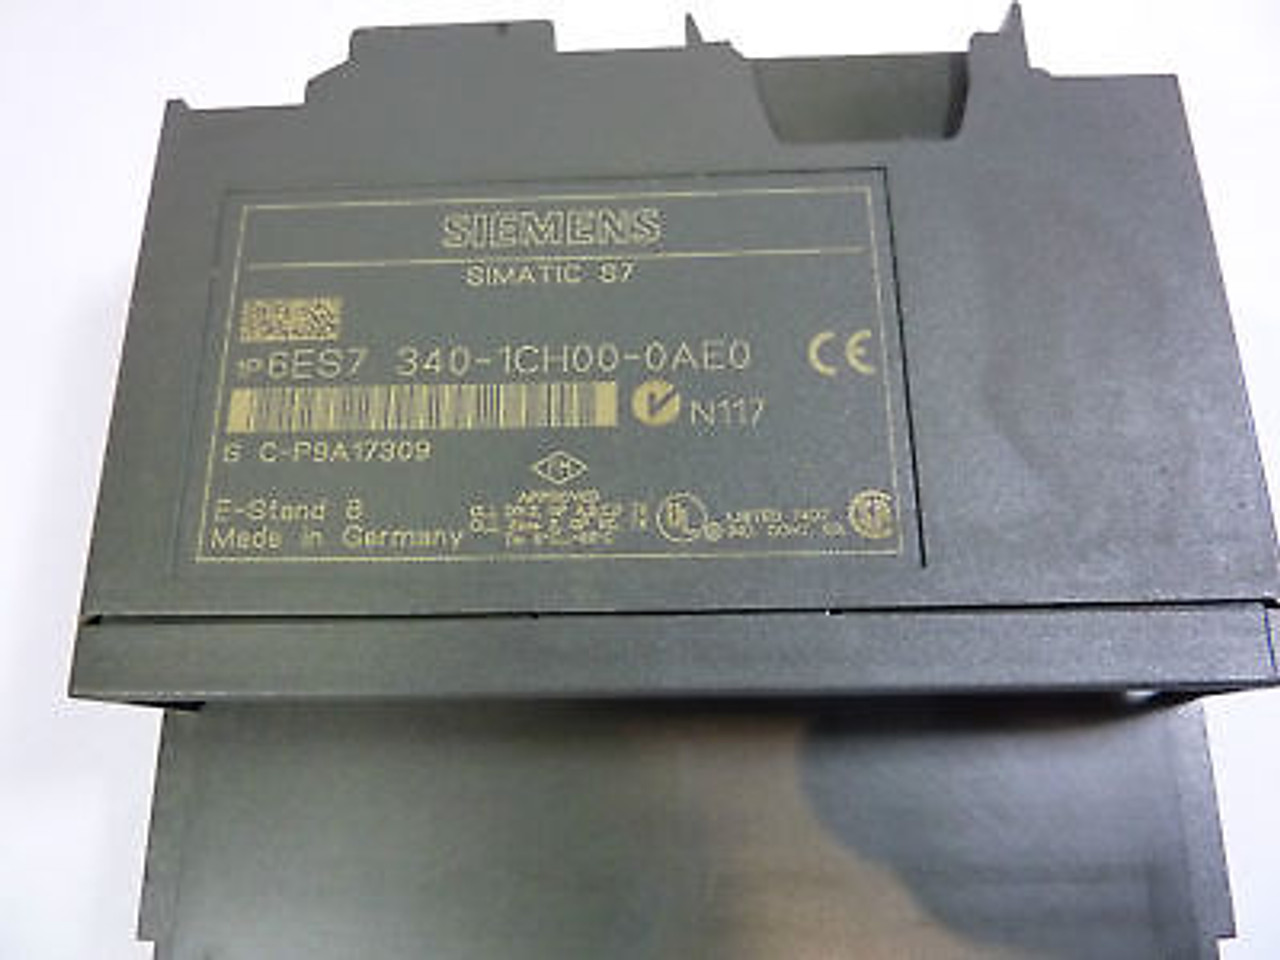 Siemens 6ES7-340-1CH00-0AE0 Communication Module USED